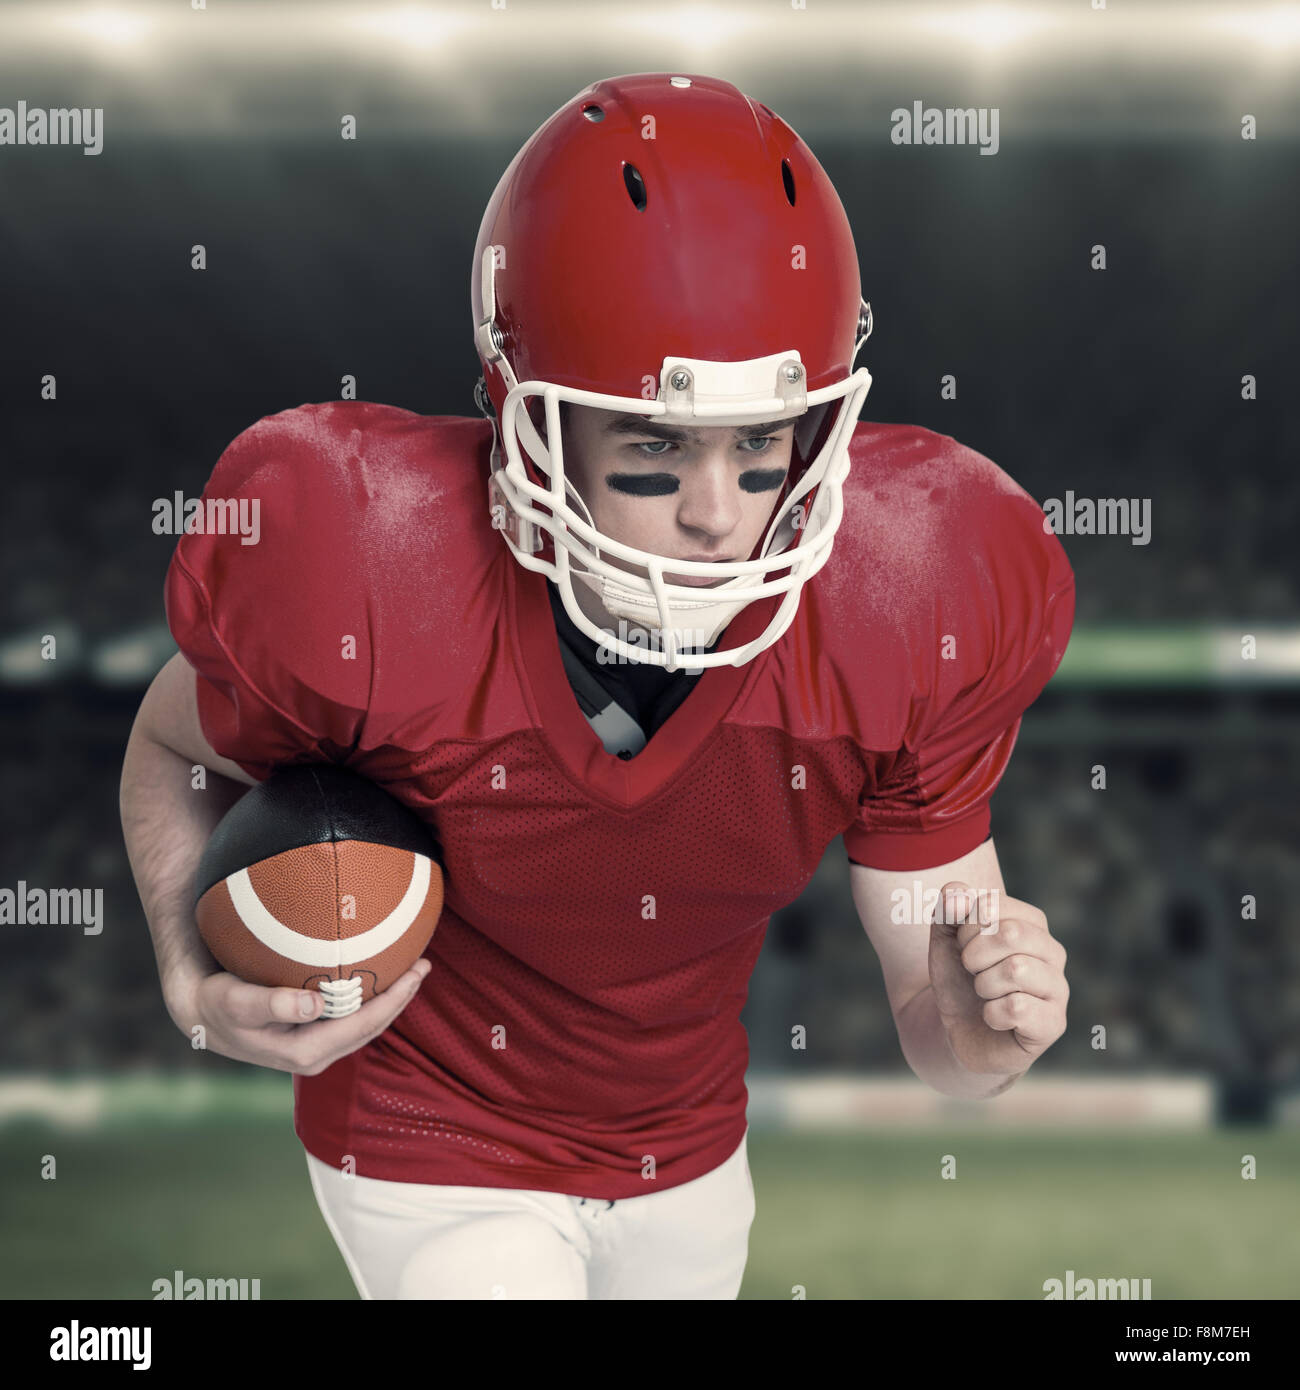 Imagen compuesta de jugador de fútbol americano corriendo con el balón Foto de stock